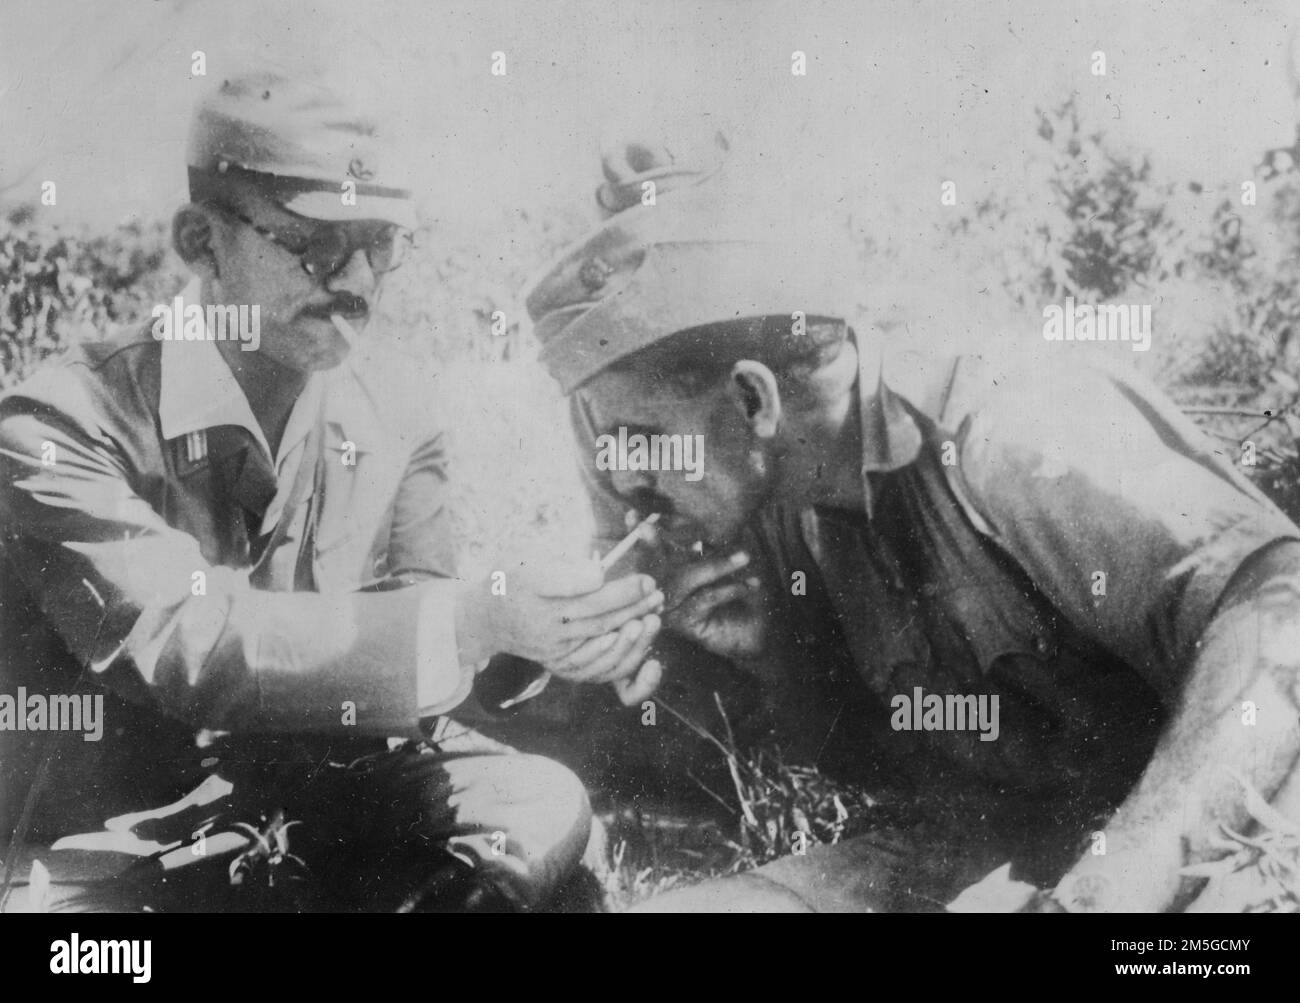 Birma-Kampagne, 1944-1945. Ein japanischer Offizier teilt sich eine Zigarette mit einem Soldaten der pro-japanischen Indischen Nationalarmee während einer kurzen Pause in ihrem letzten unglücklichen Vormarsch nach Indien, April 1944. Stockfoto